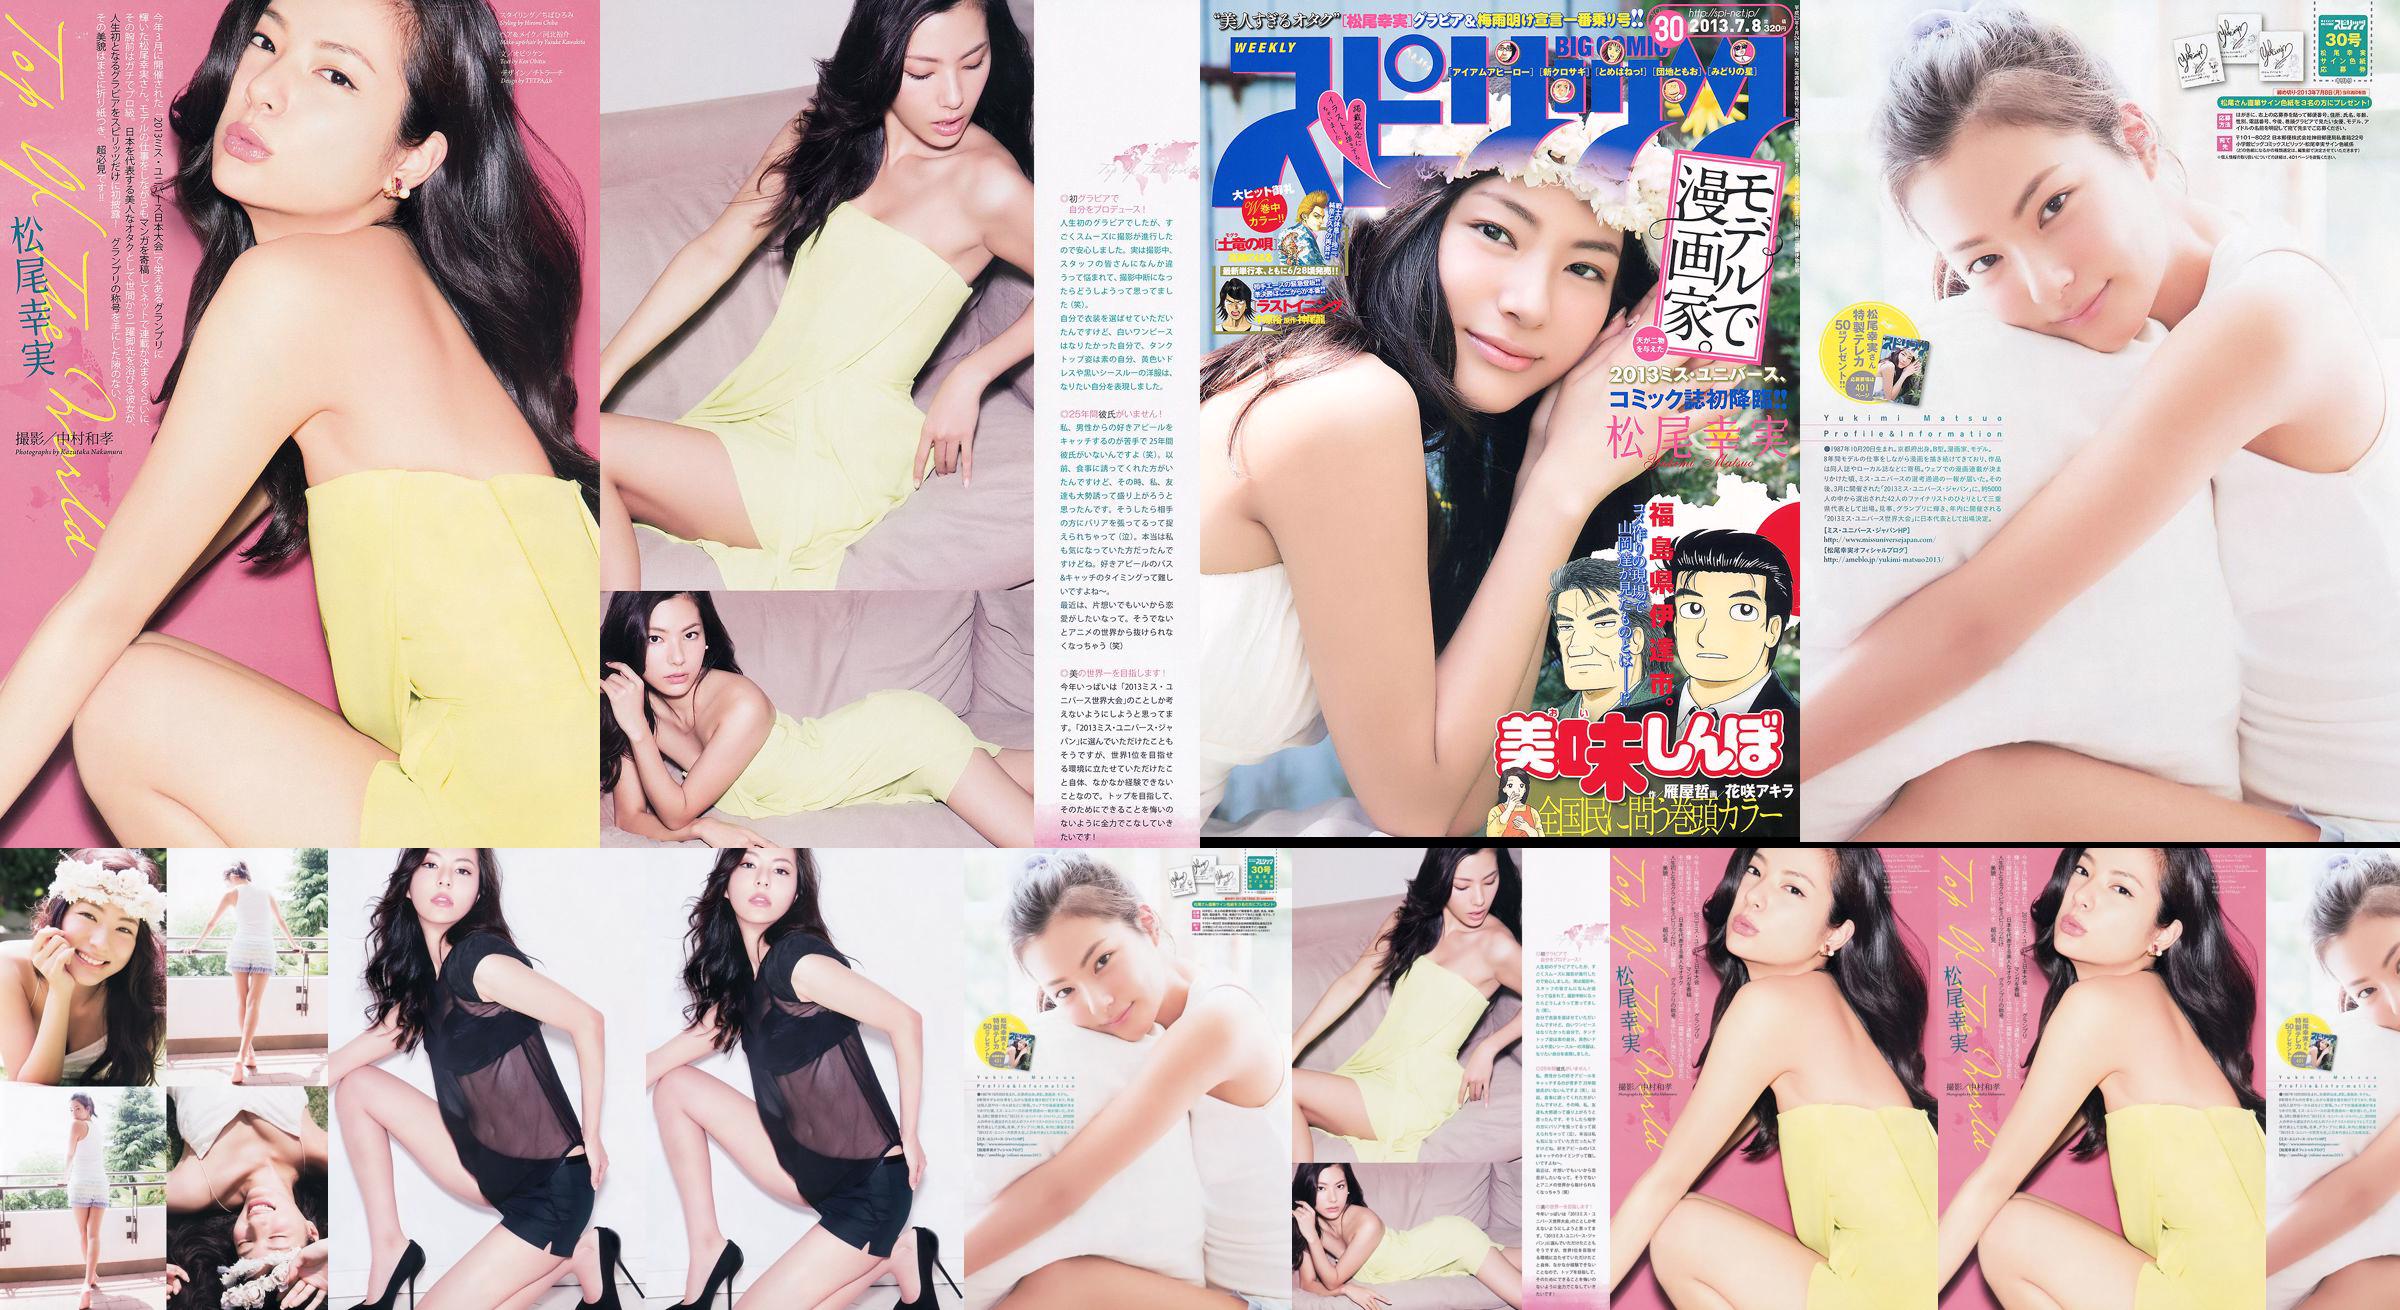 [Weekly Big Comic Spirits] Komi Matsuo 2013 No.30 Photo Magazine No.994640 Página 1